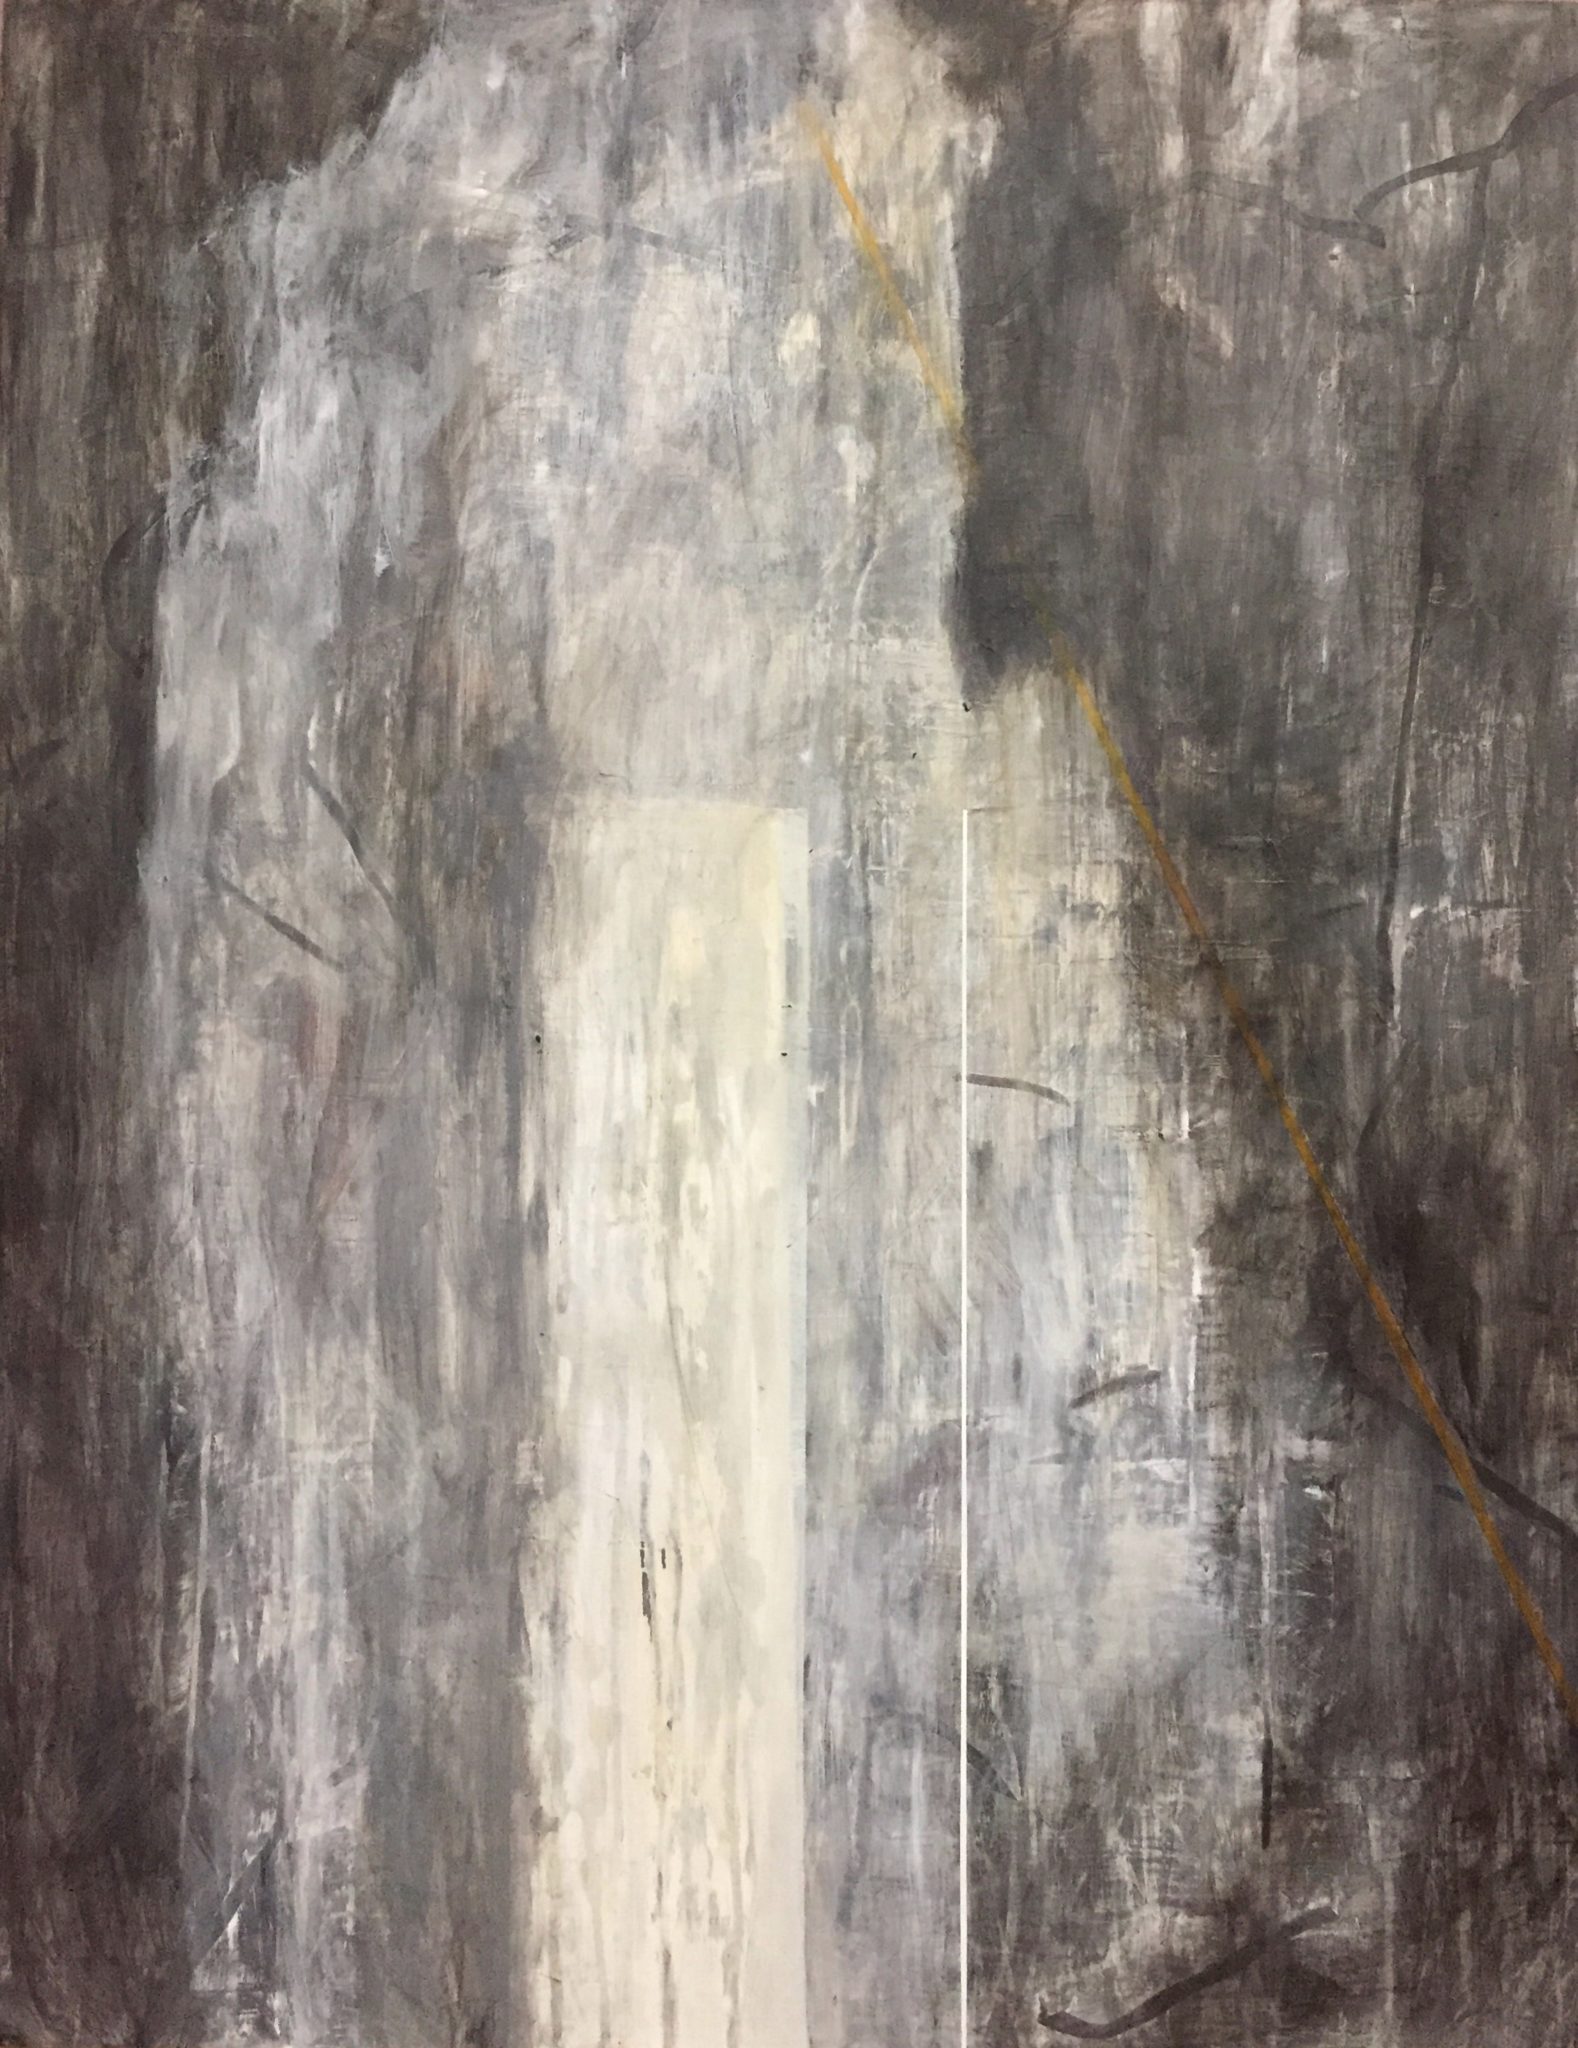 Aaron Olson-Reiners, Selfobject 12, 2018, acrylic on panel